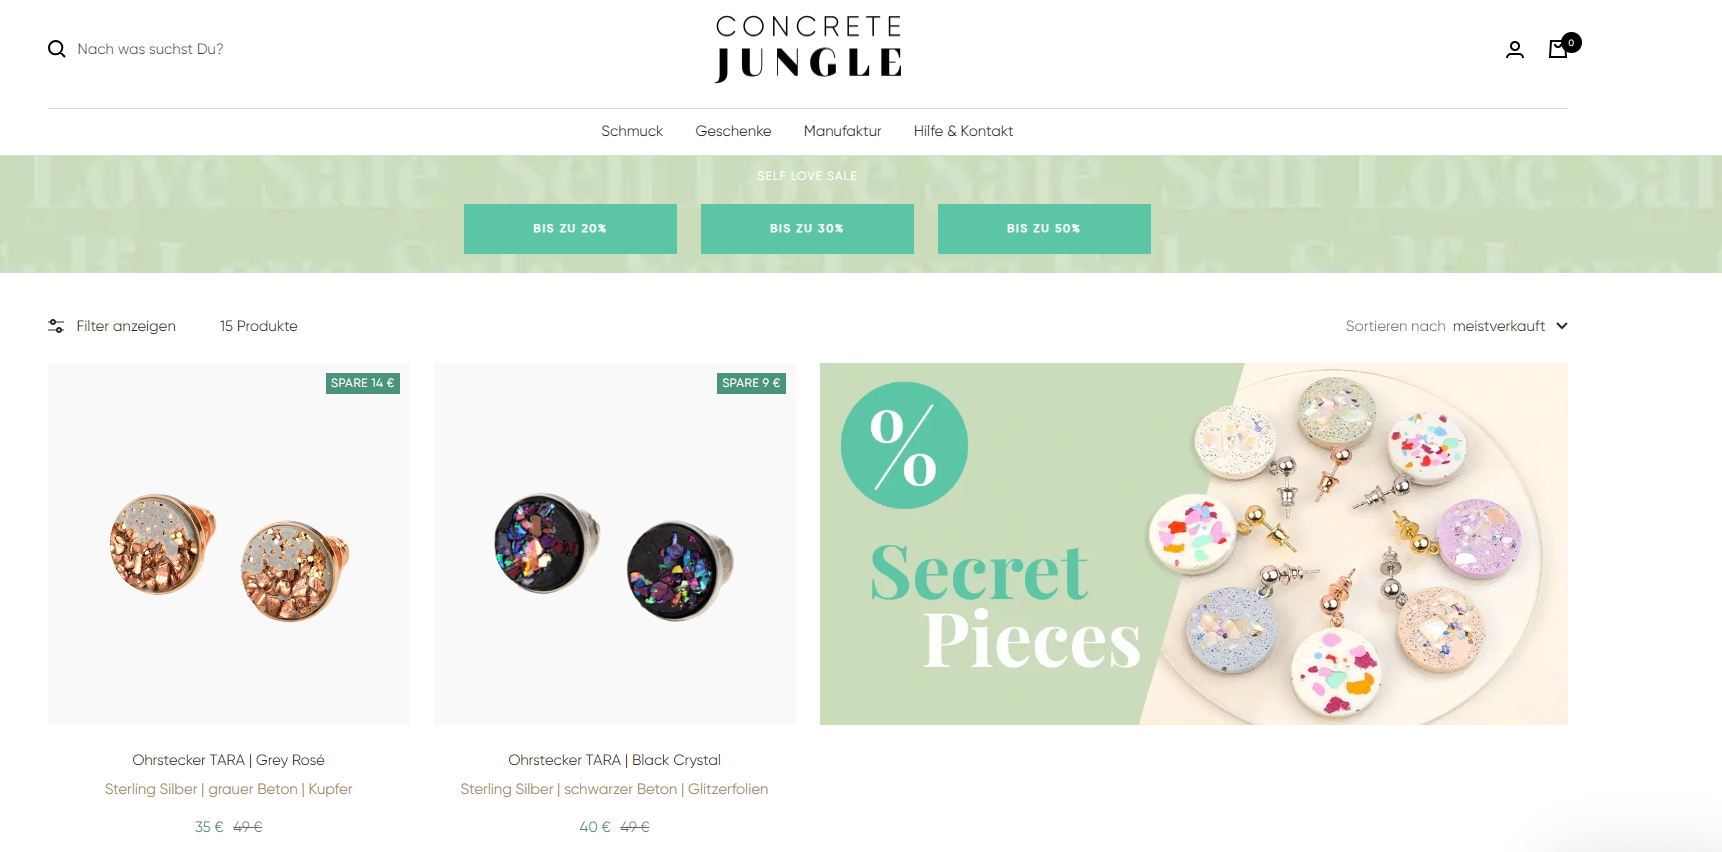 Die Firma Concrete Jungle setzt auf ihre Leidenschaft für Schmuck und Design, um ein gutes Produkt für den Onlineshop zu finden.